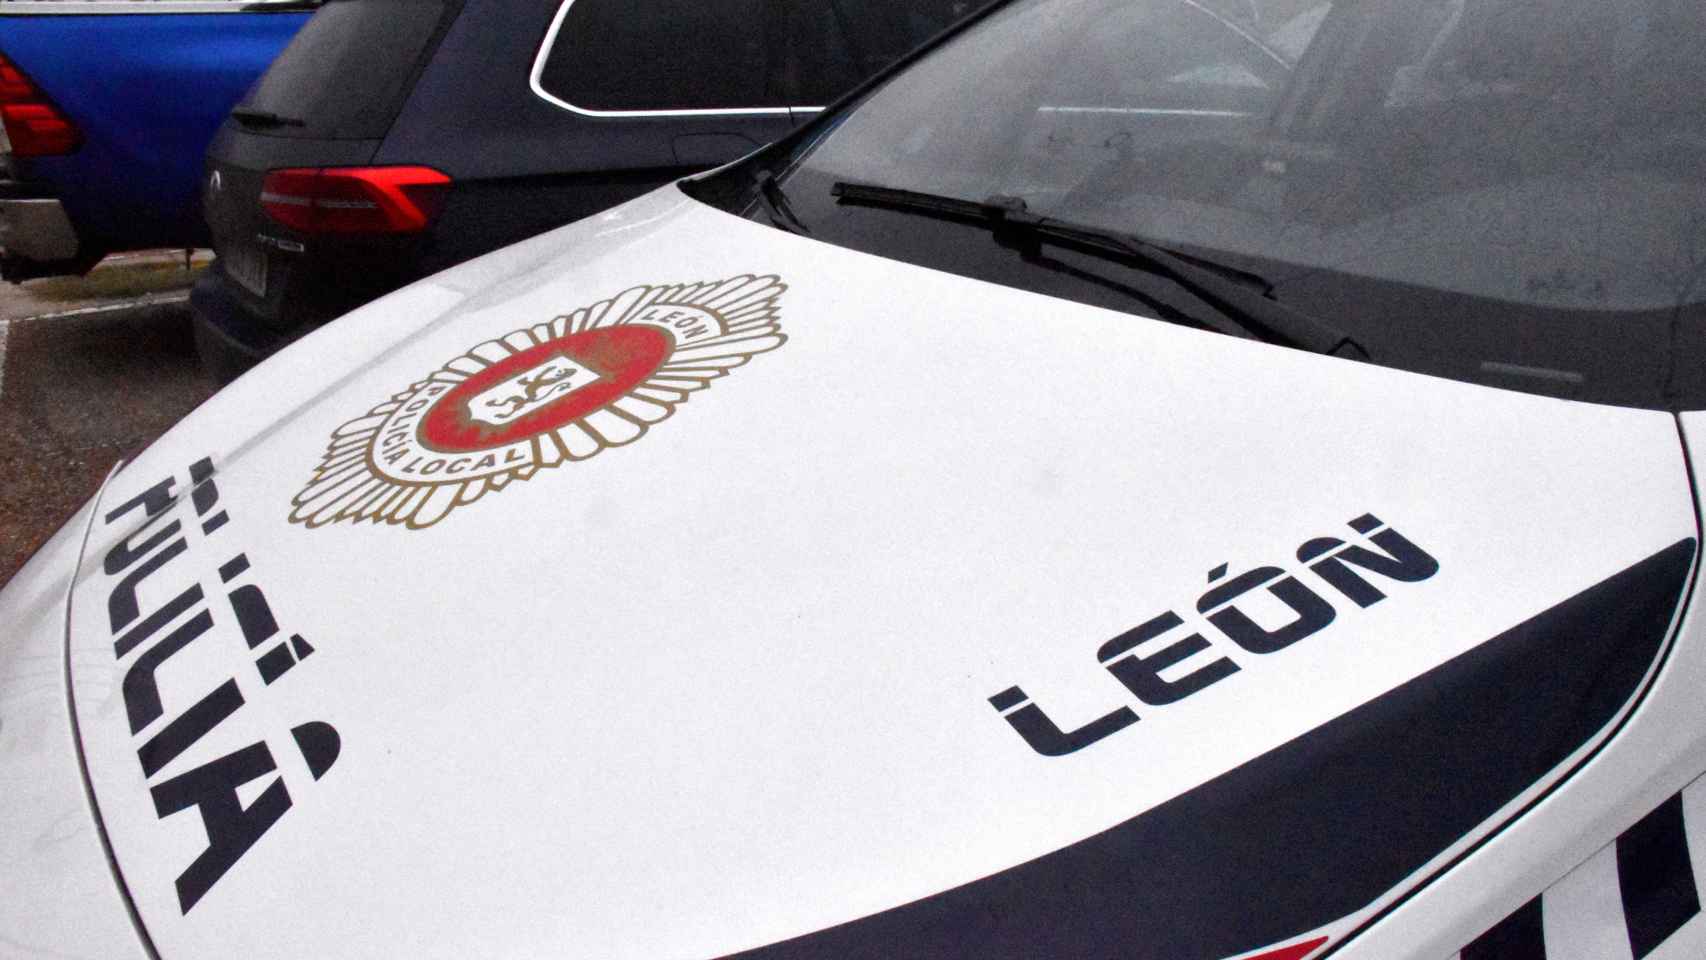 Un vehículo de la Policía Local de León.